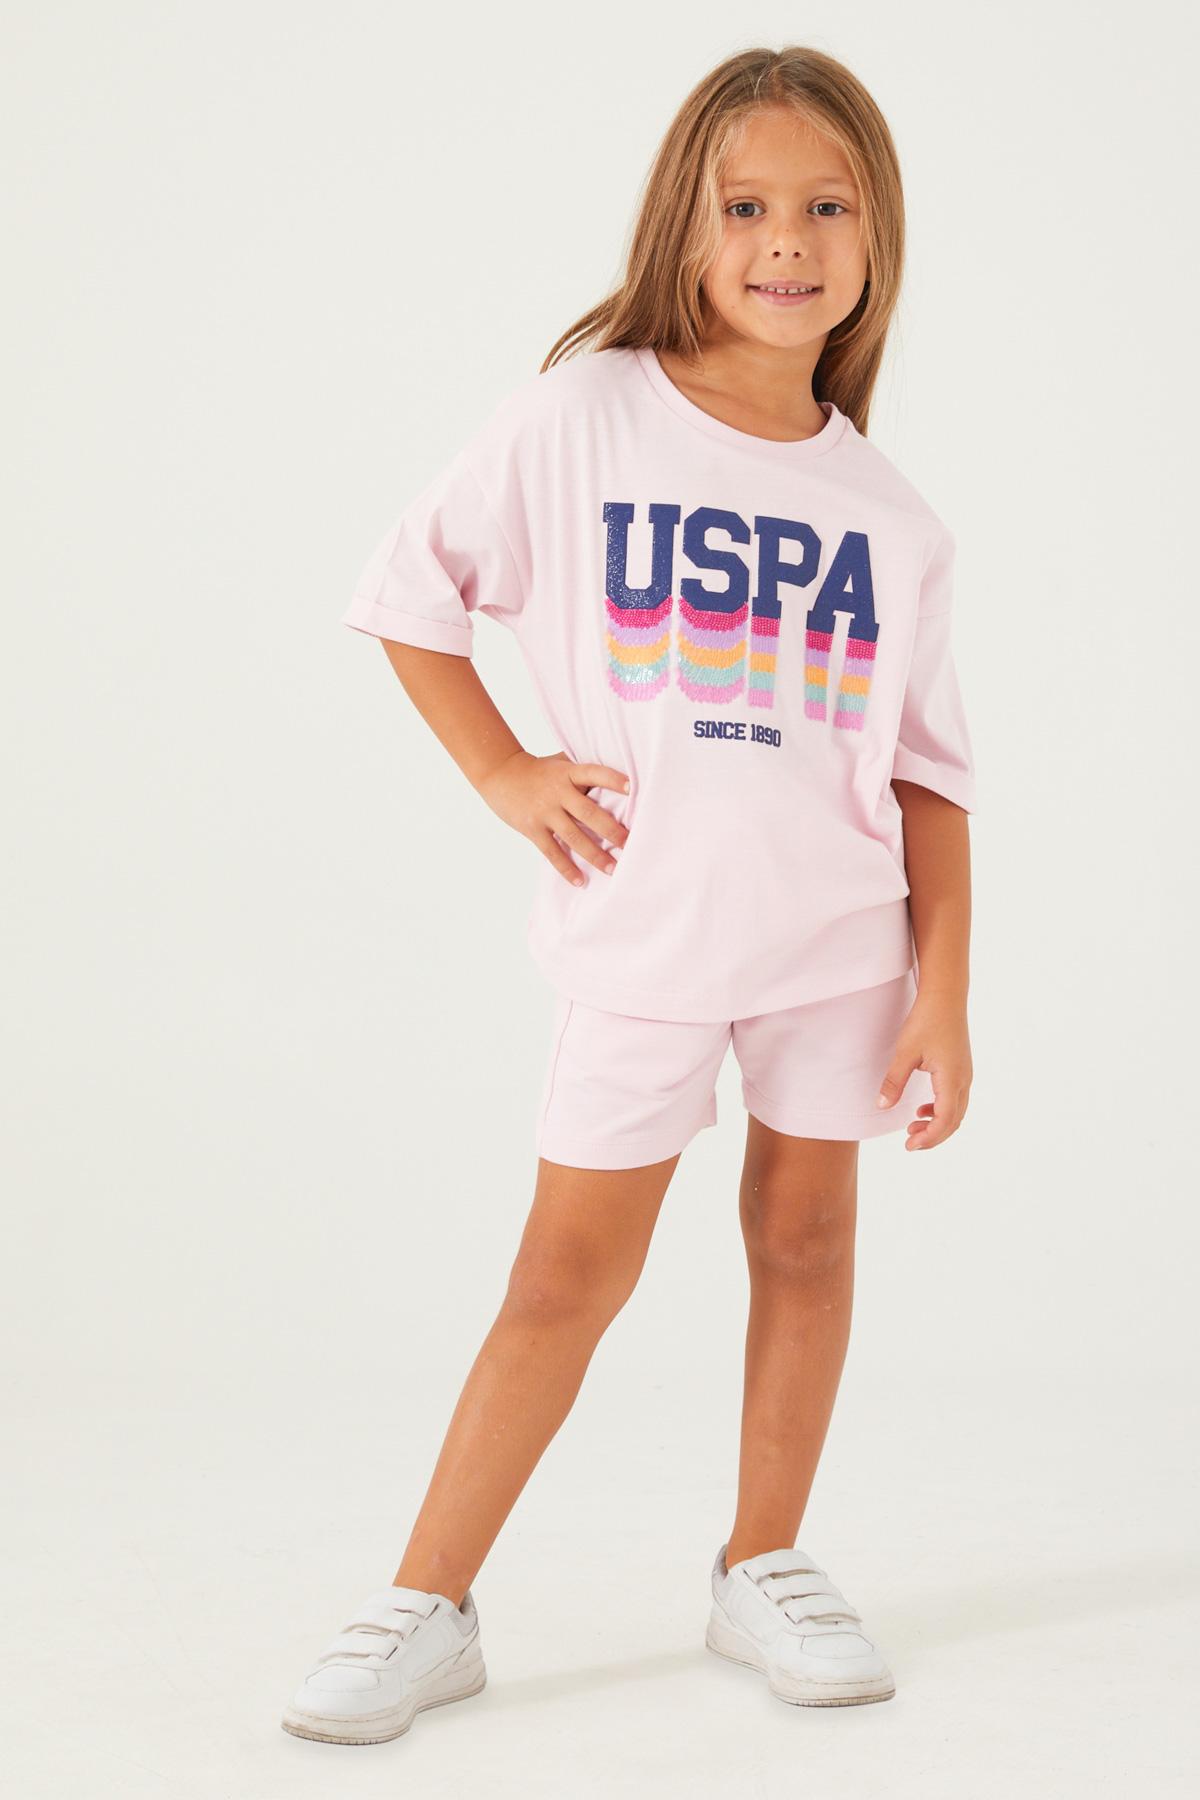 Selected image for U.S. POLO ASSN. Komplet šorc i majica za devojčice US1405-G roze